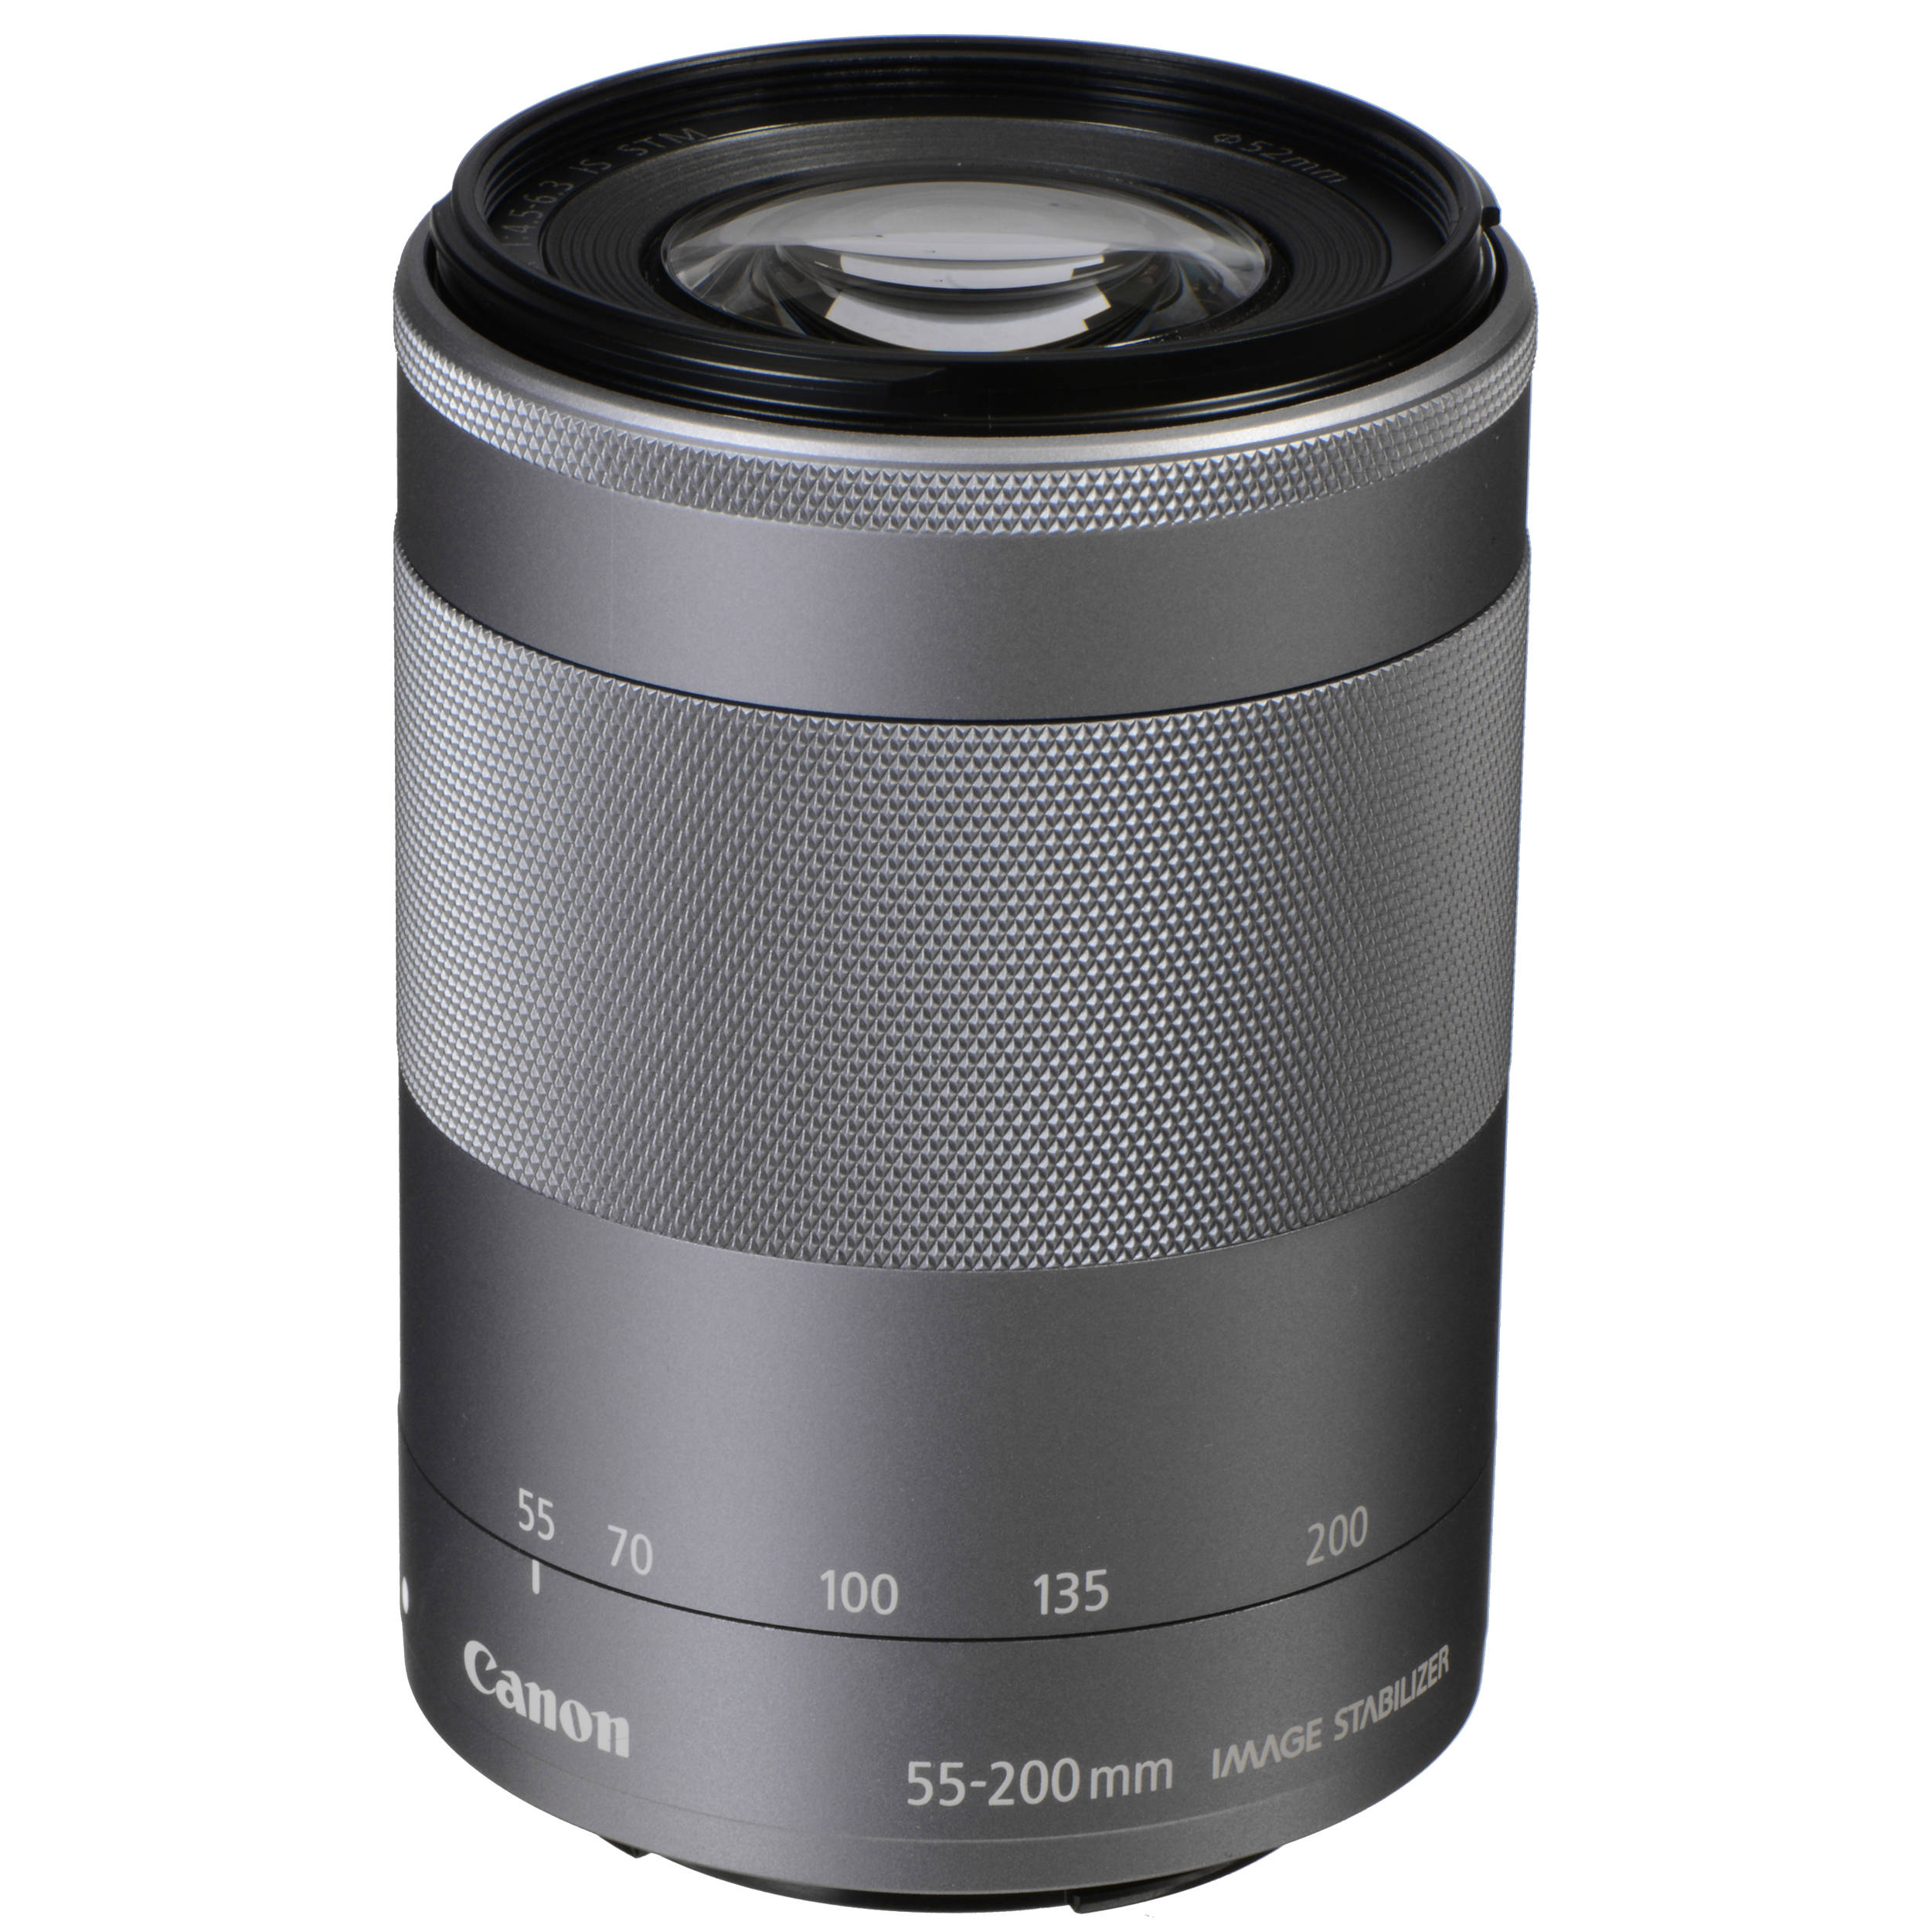 Canon EF-M 55-200mm f/4.5-6.3 IS STM Lens (Mới 100%) - Bảo hành chính hãng trên toàn quốc